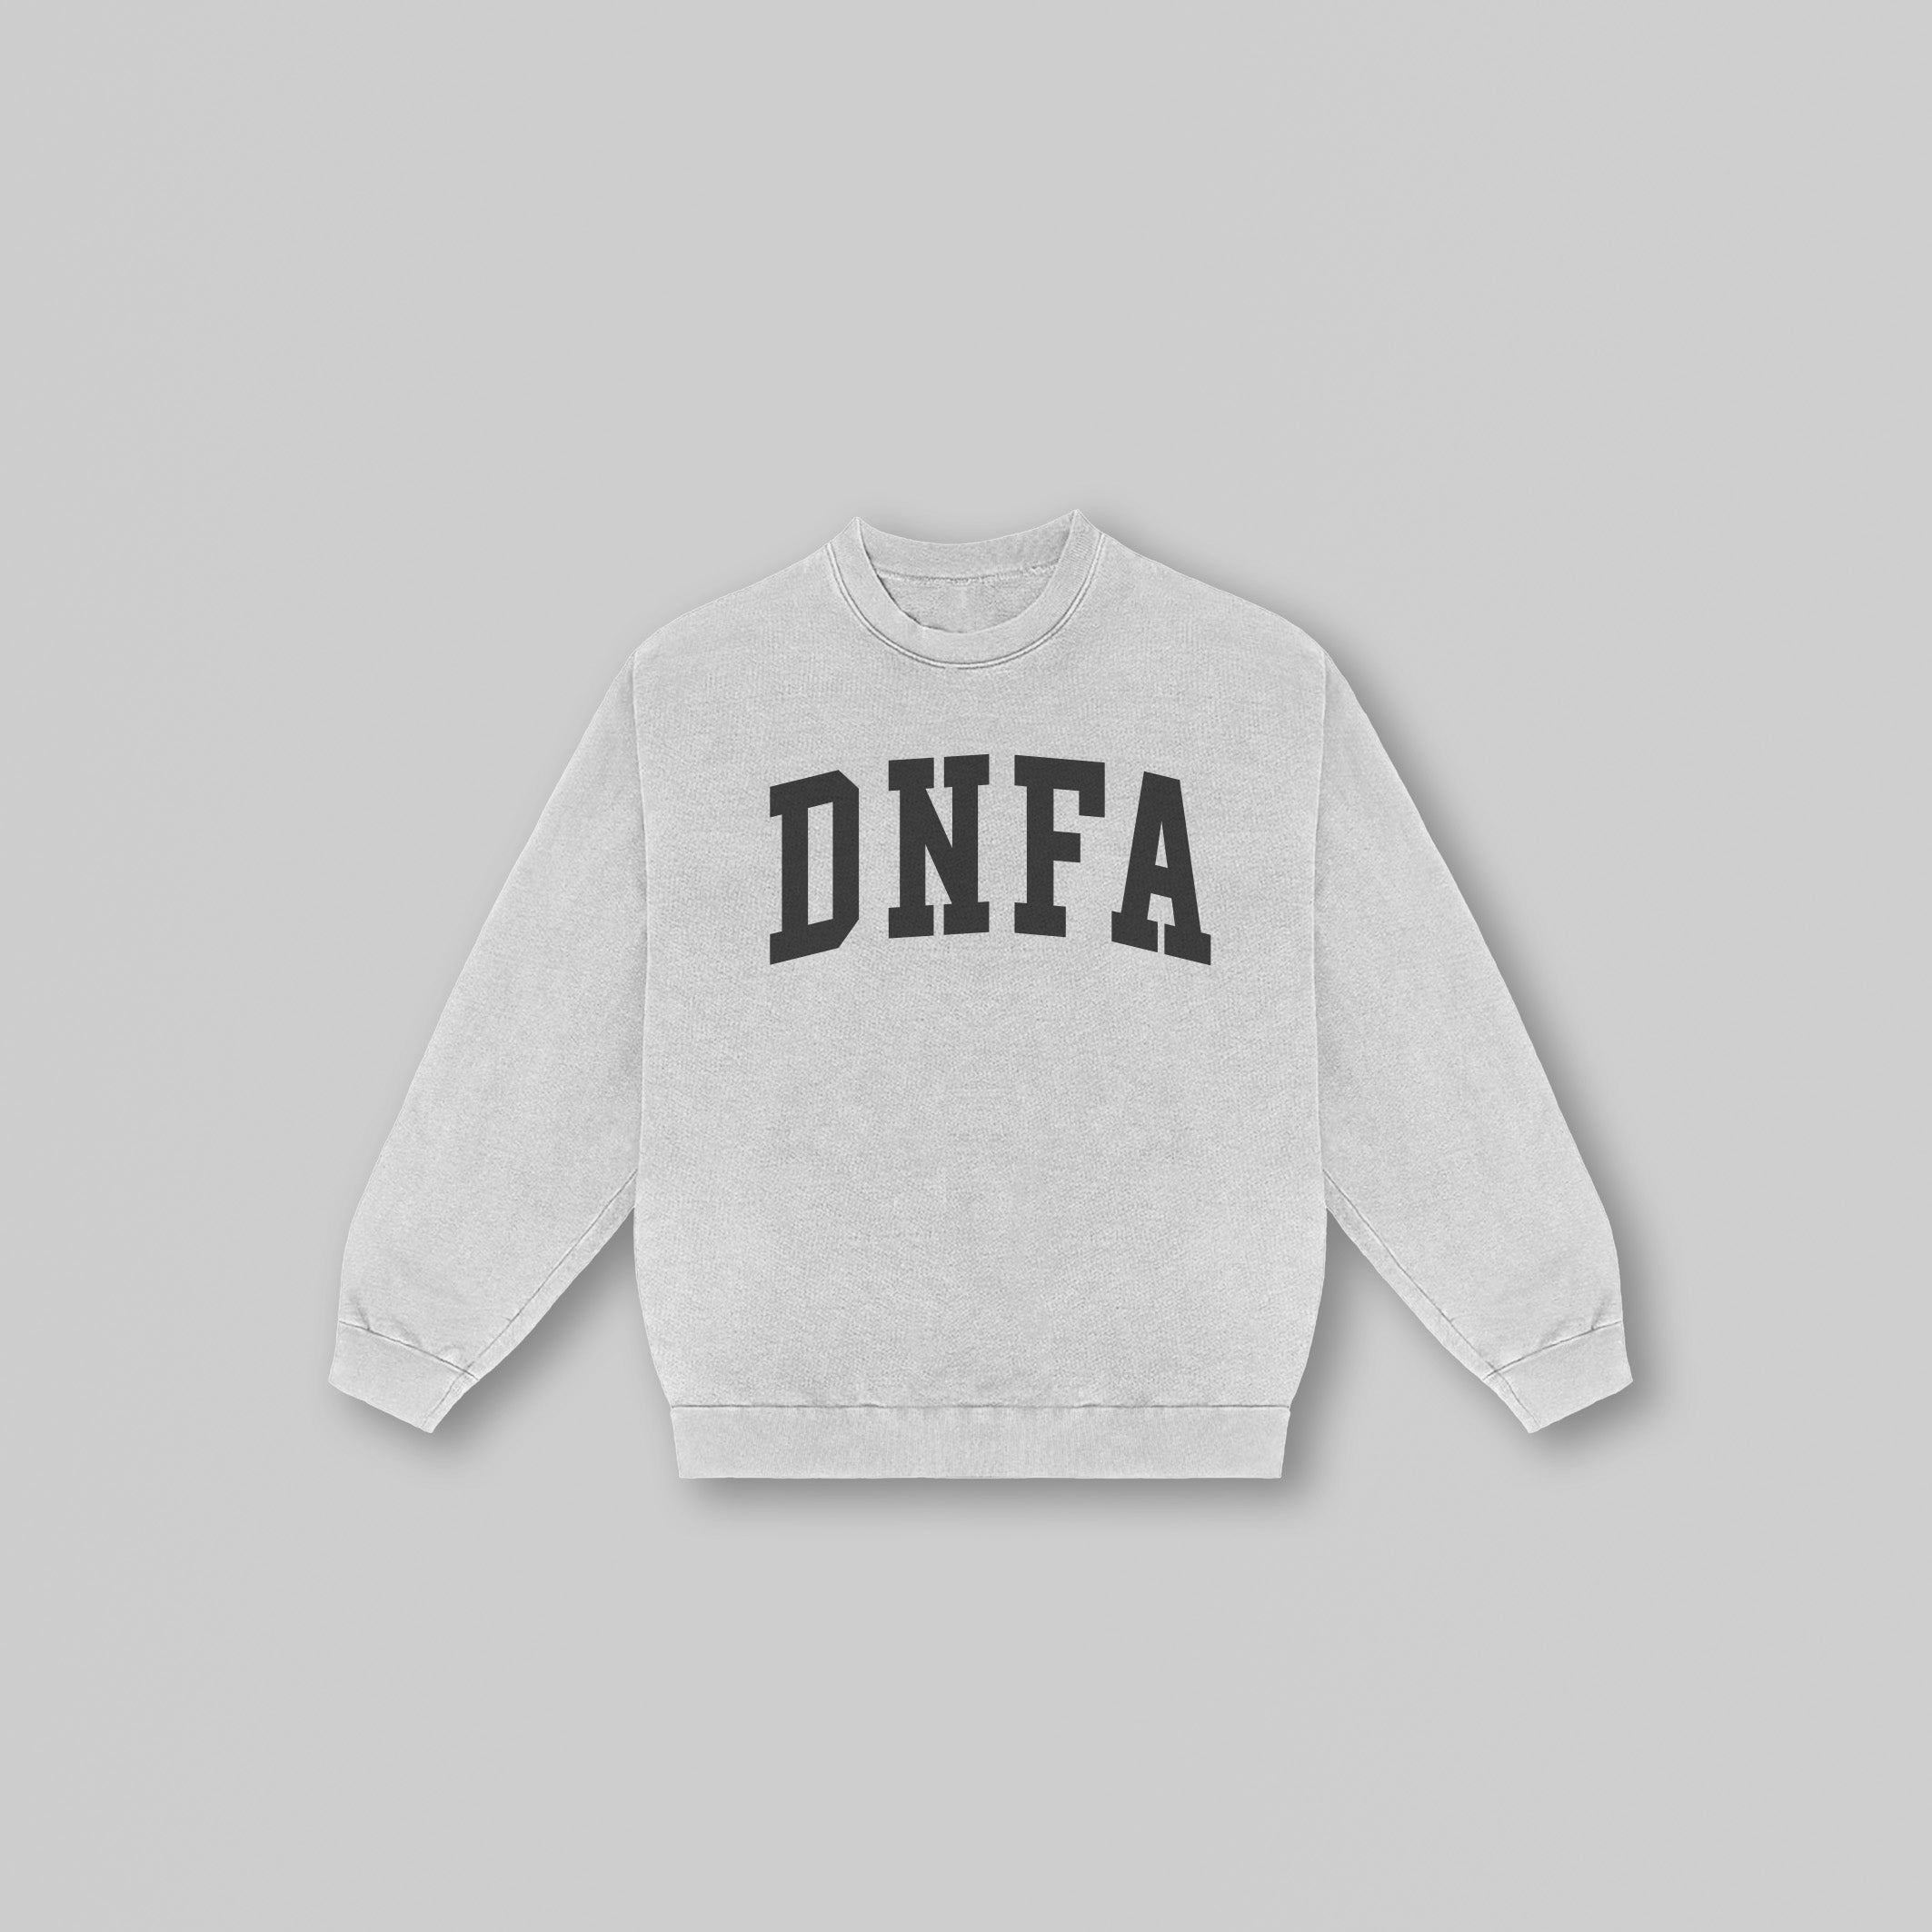 DNFA Sweatshirt